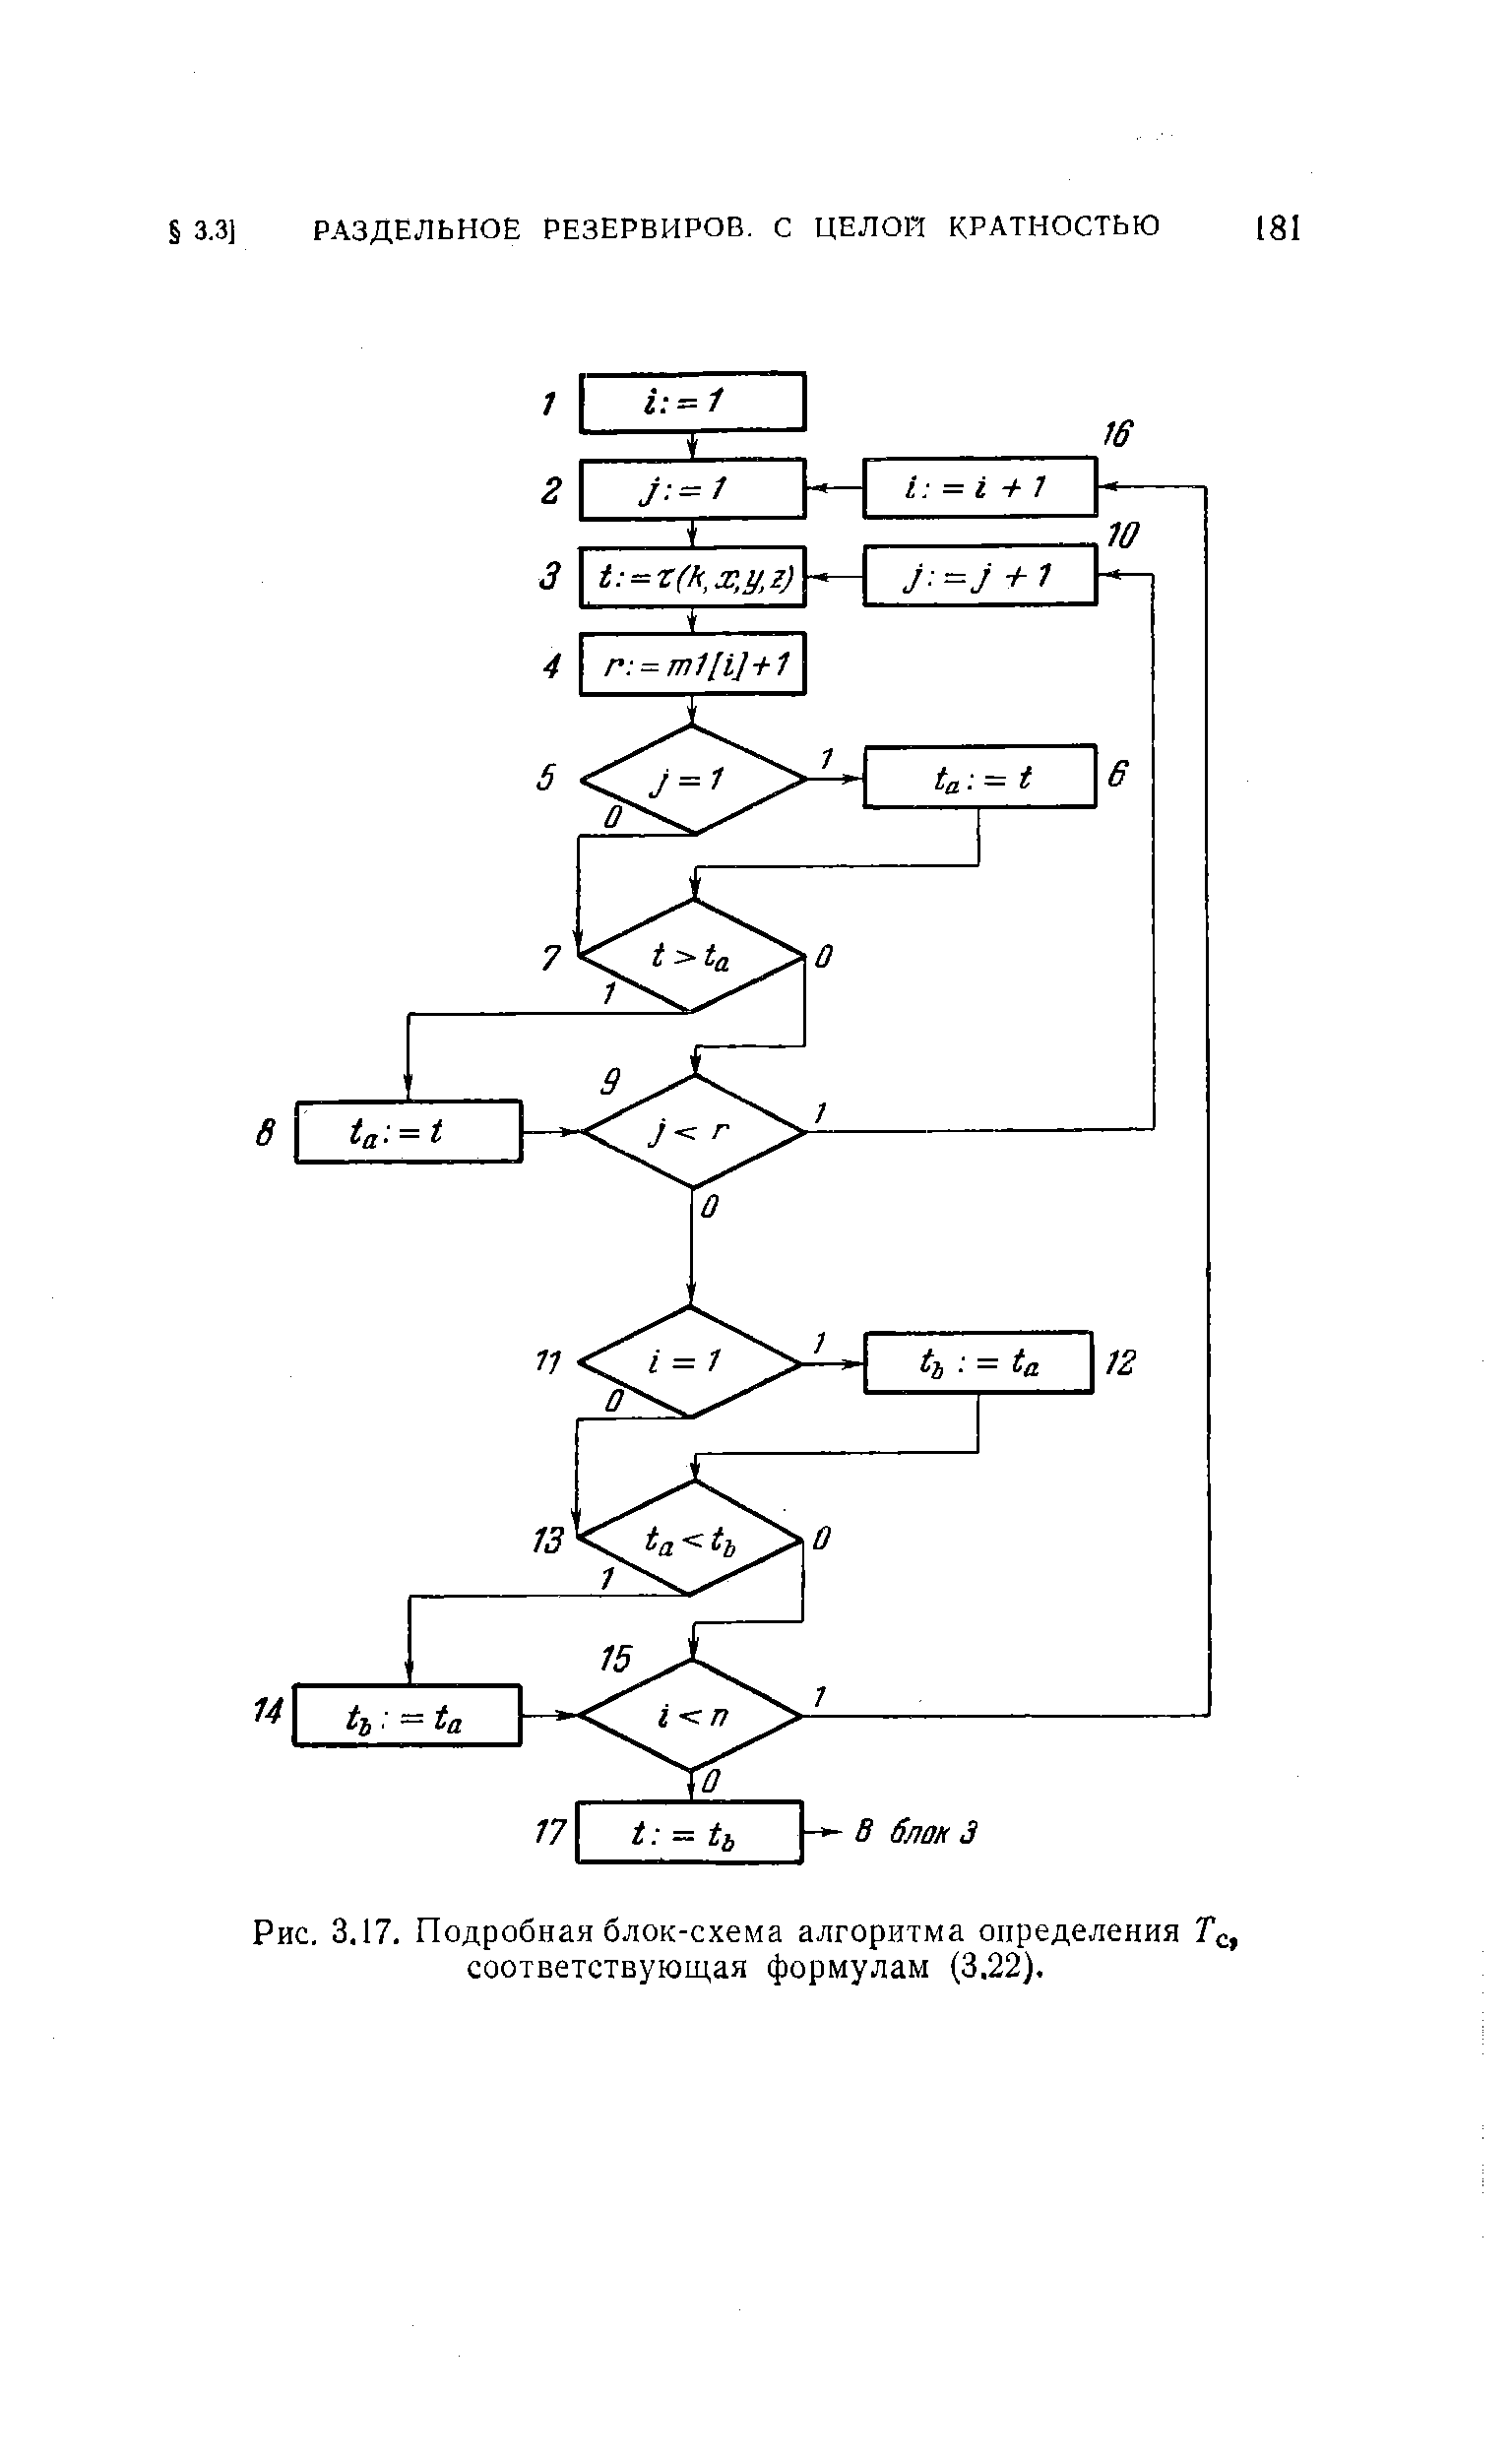 Рис. 3.17. Подробная блок-схема алгоритма определения Тс, соответствующая формулам (3.22).
